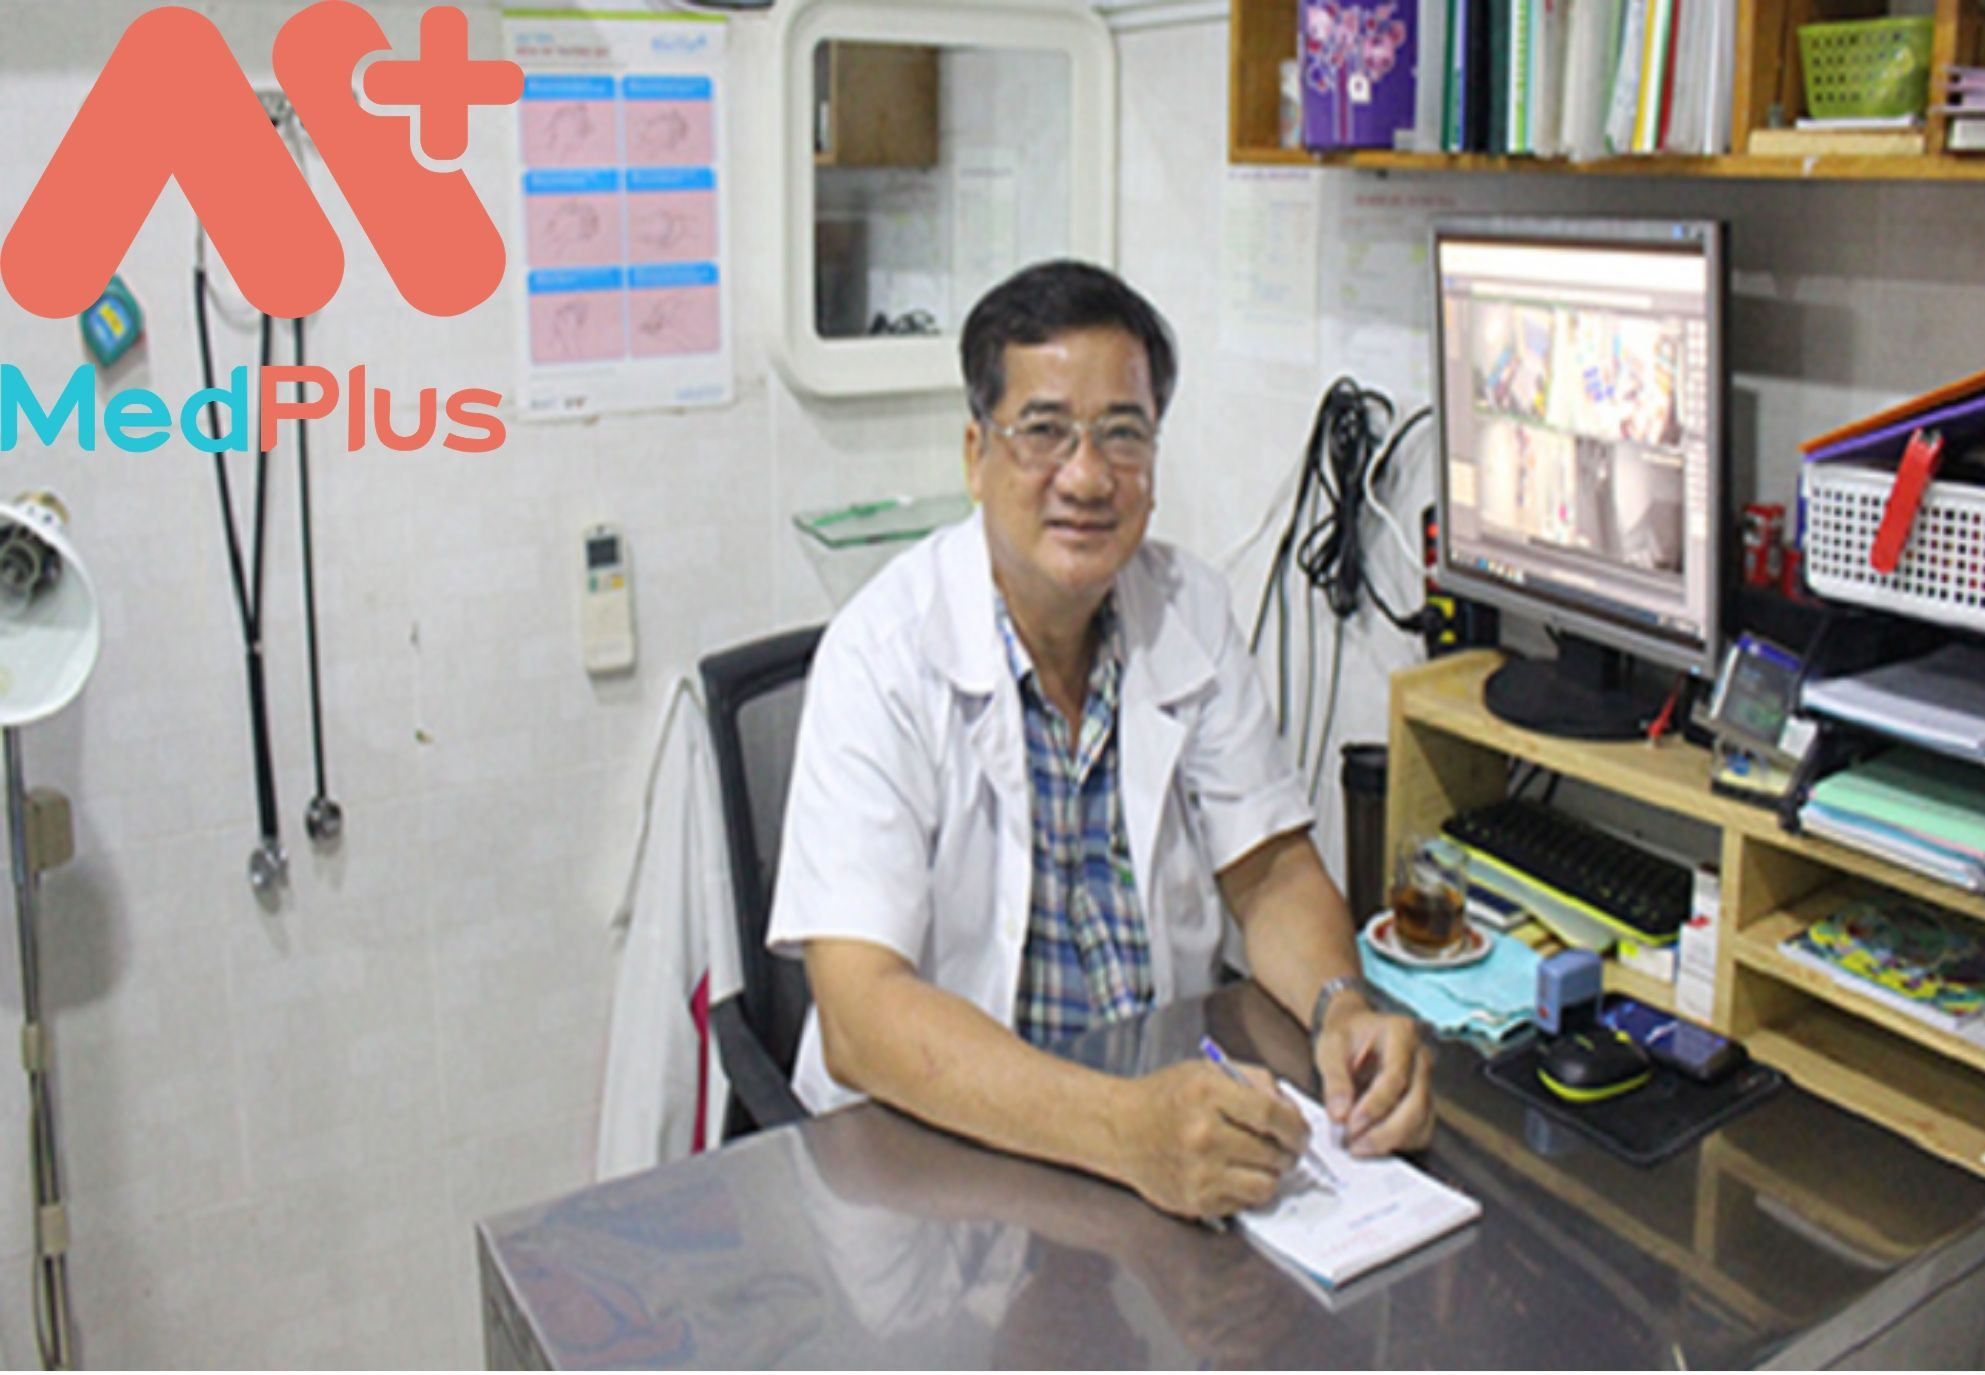 bác sĩ Trần Việt Cường chuyên khám, chẩn đoán các bệnh vô sinh hiếm muộn, siêu âm thai, khám và điều trị phụ khoa